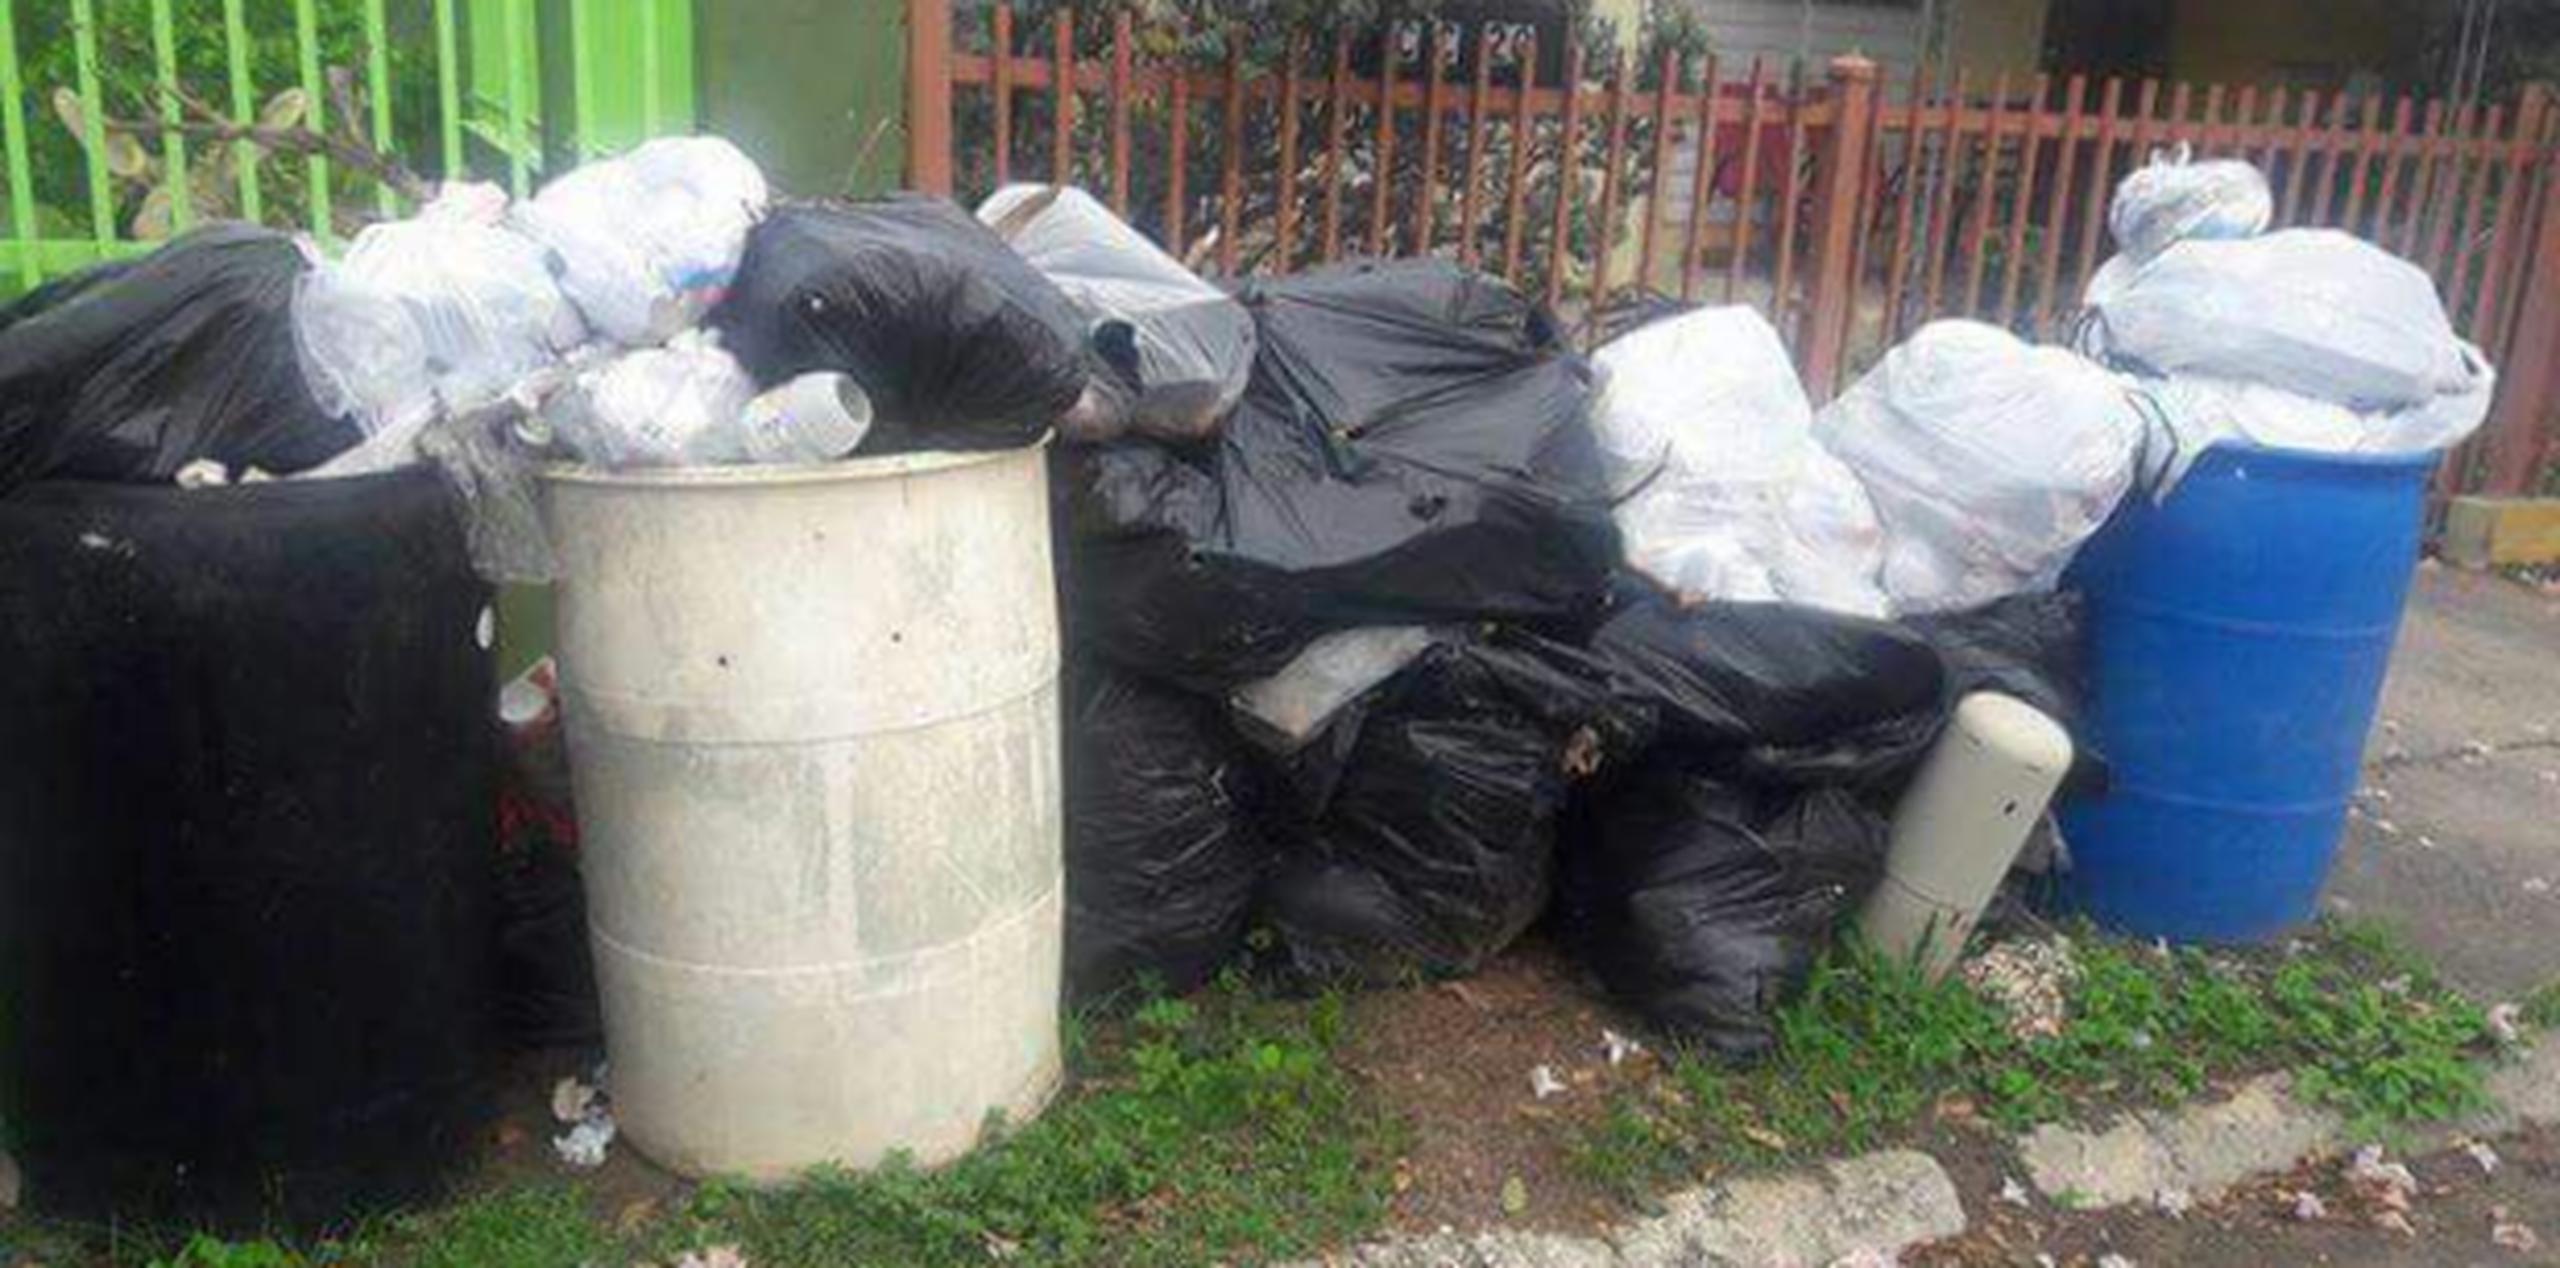 Sectores de Arecibo llevan hasta tres semanas sin que les recojan la basura. (Suministrada)